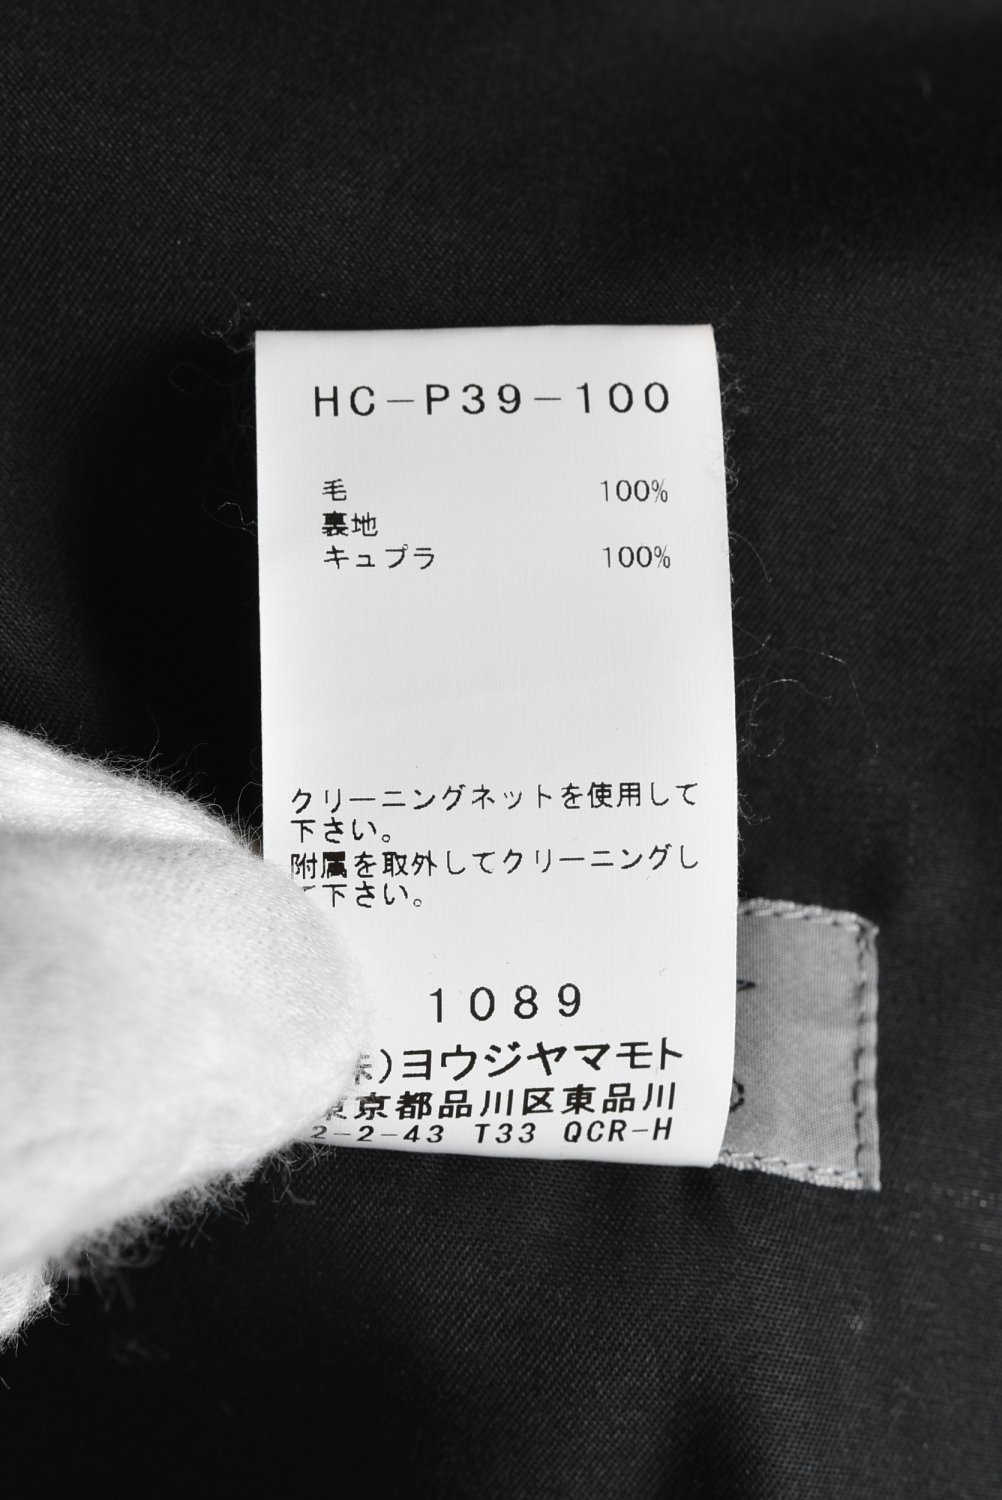 Yohji Yamamoto POUR HOMME ヨウジヤマモトプールオム 19AW HC-P39-100 ウールギャバジン 前裾レースアップ ジョッパーズ パンツ ブラック系 22ウエスト